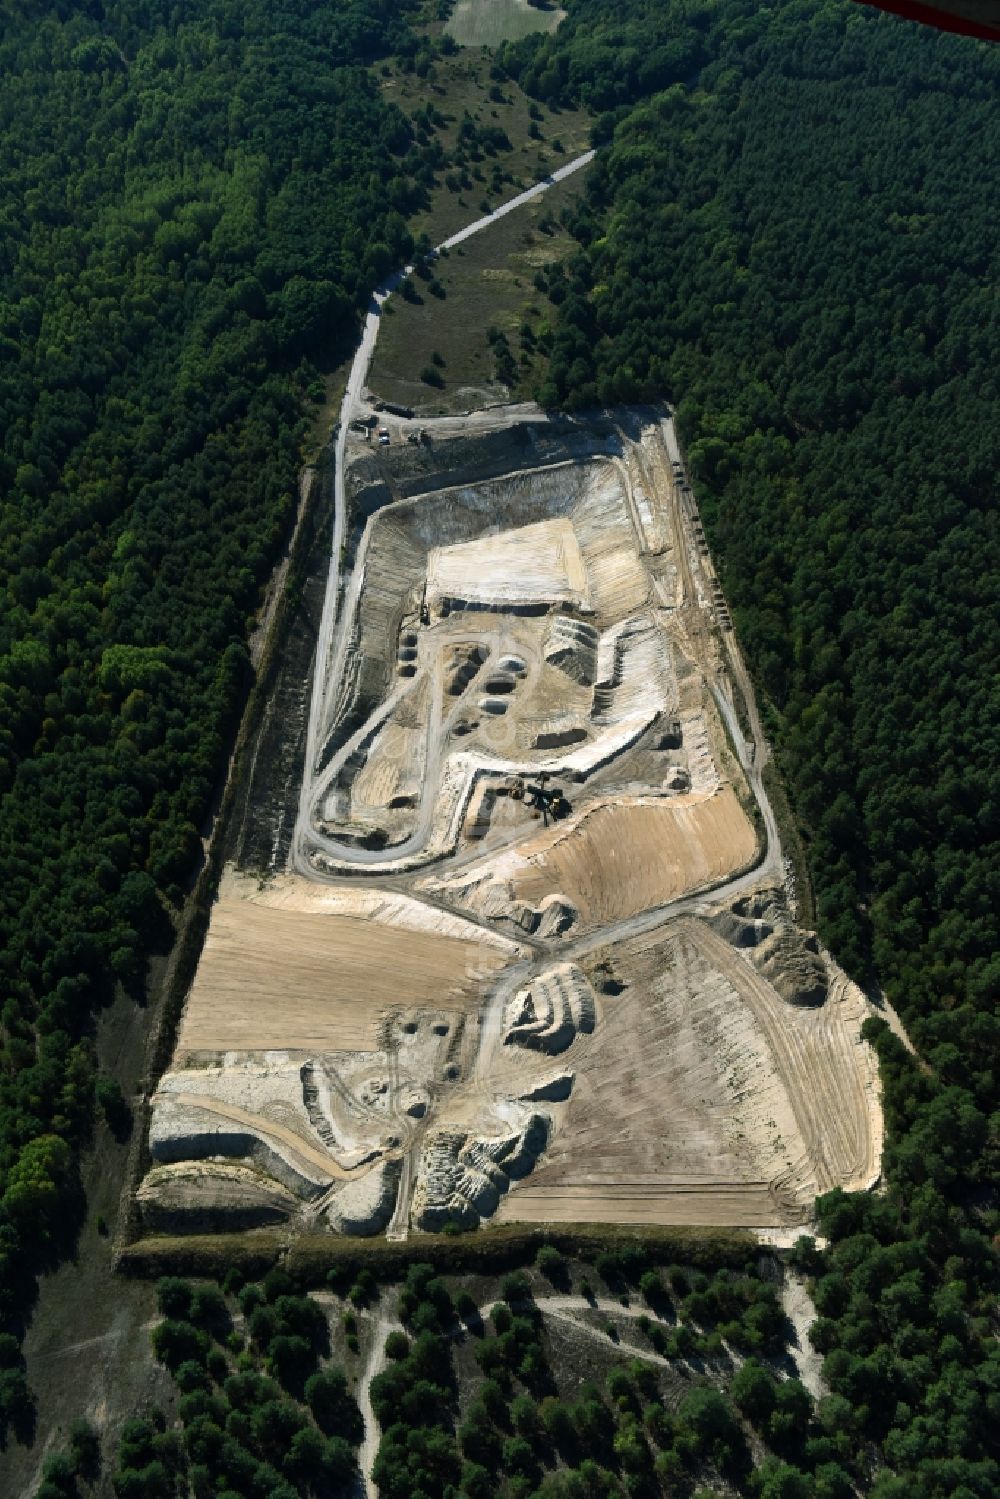 Luftbild Schöneiche - Kies- Tagebau in Schöneiche im Bundesland Brandenburg